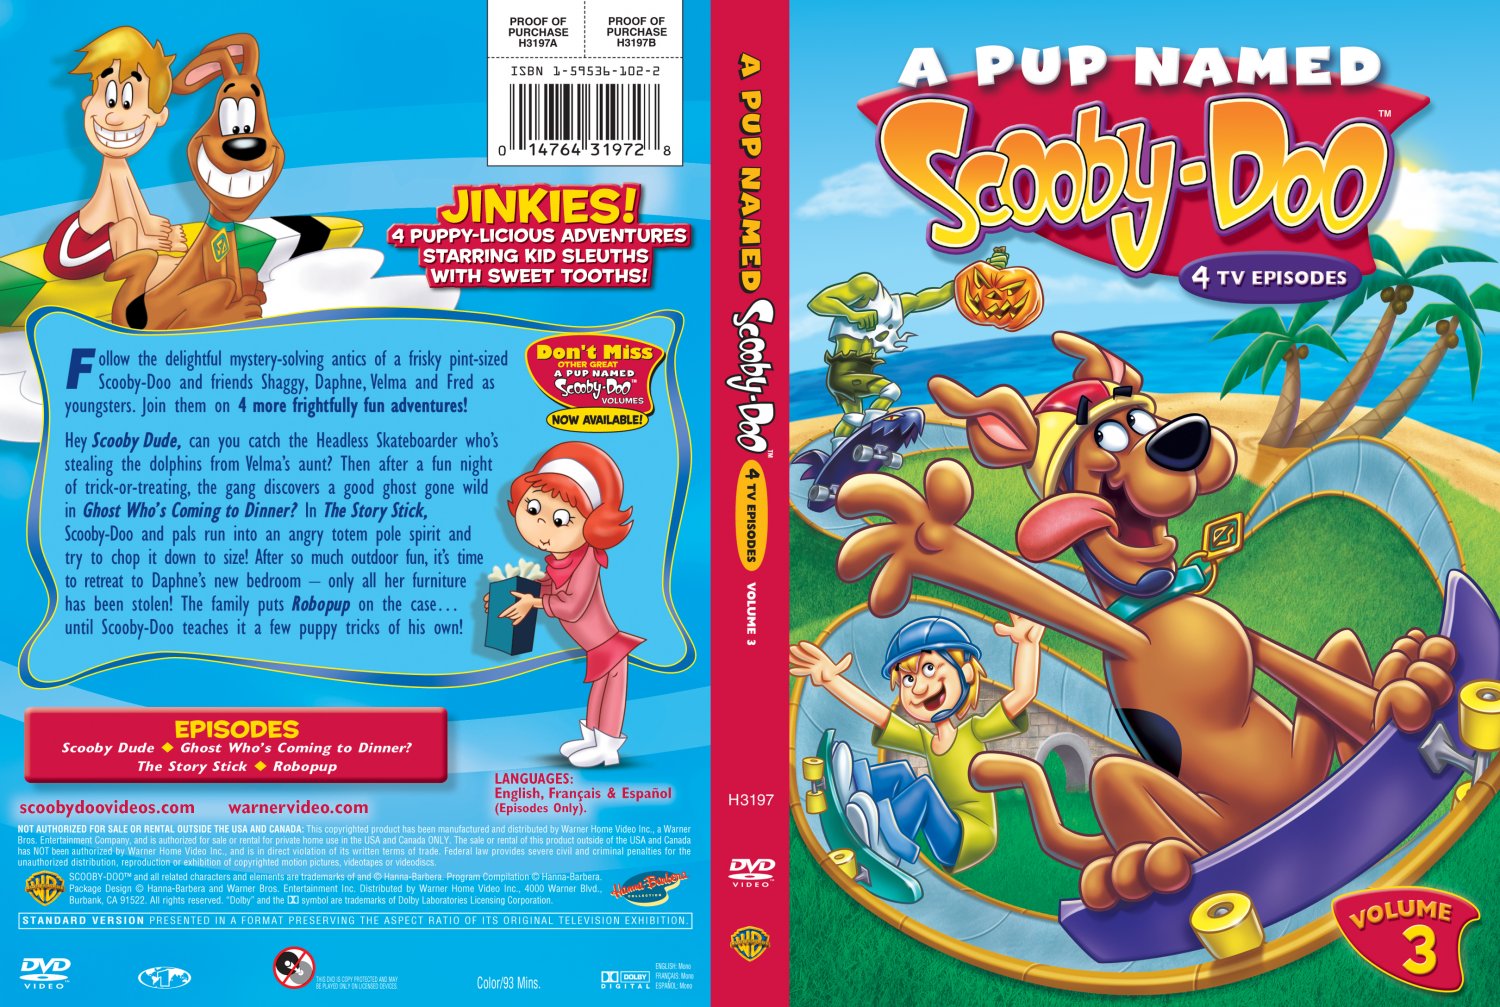 A Pup Named Scooby-Doo Vol 3